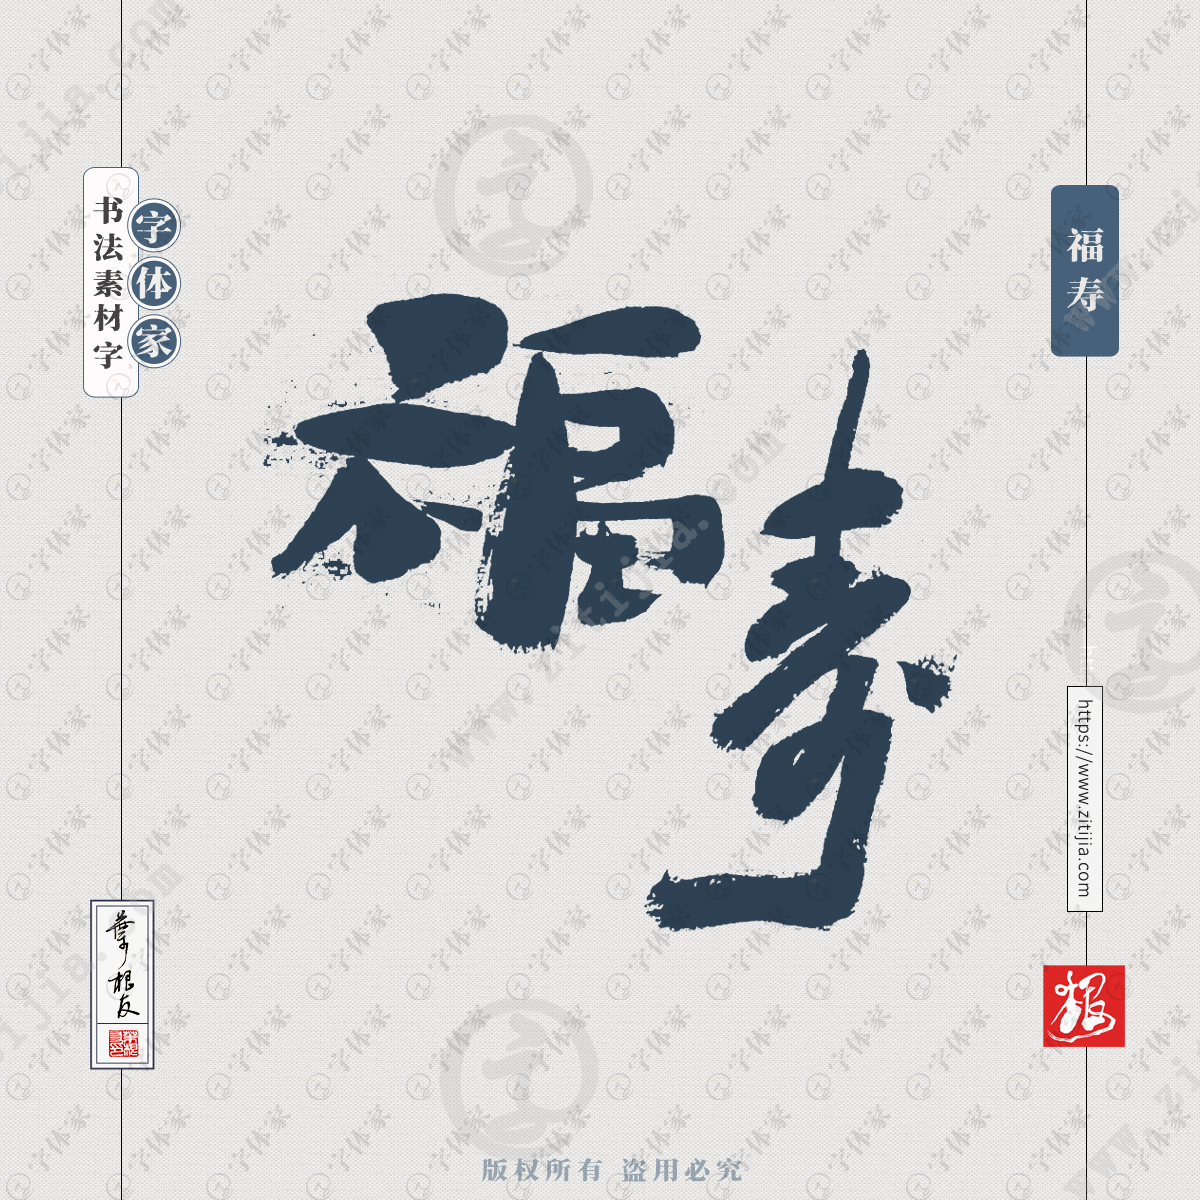 书法字体可下载源文件书法素材 福寿是一个汉语词语,释义是指幸福长寿